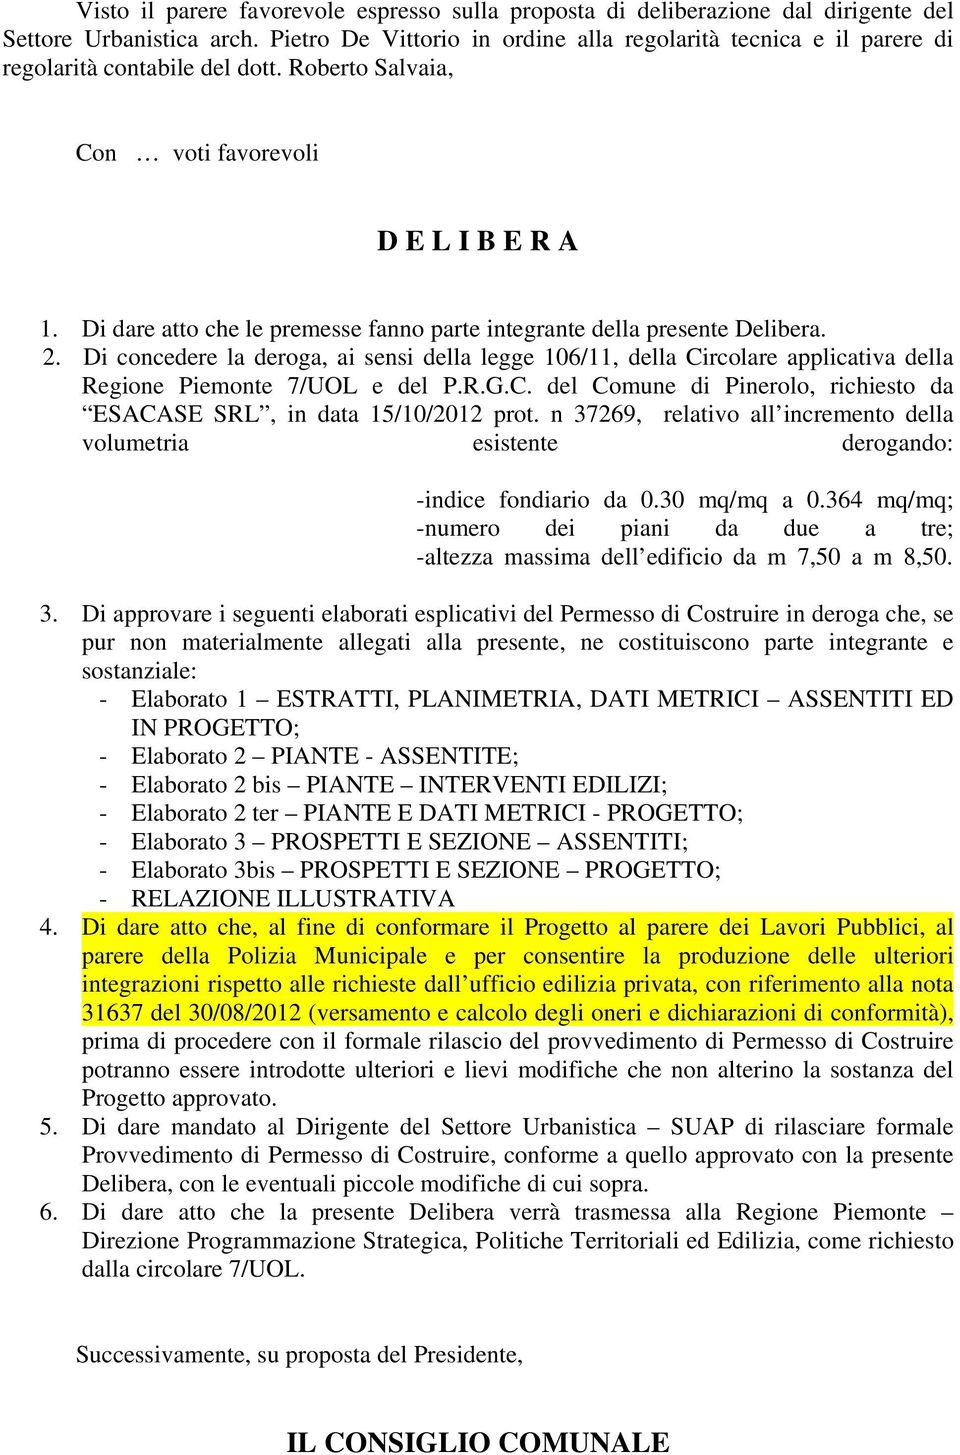 Di dare atto che le premesse fanno parte integrante della presente Delibera. 2. Di concedere la deroga, ai sensi della legge 106/11, della Circolare applicativa della Regione Piemonte 7/UOL e del P.R.G.